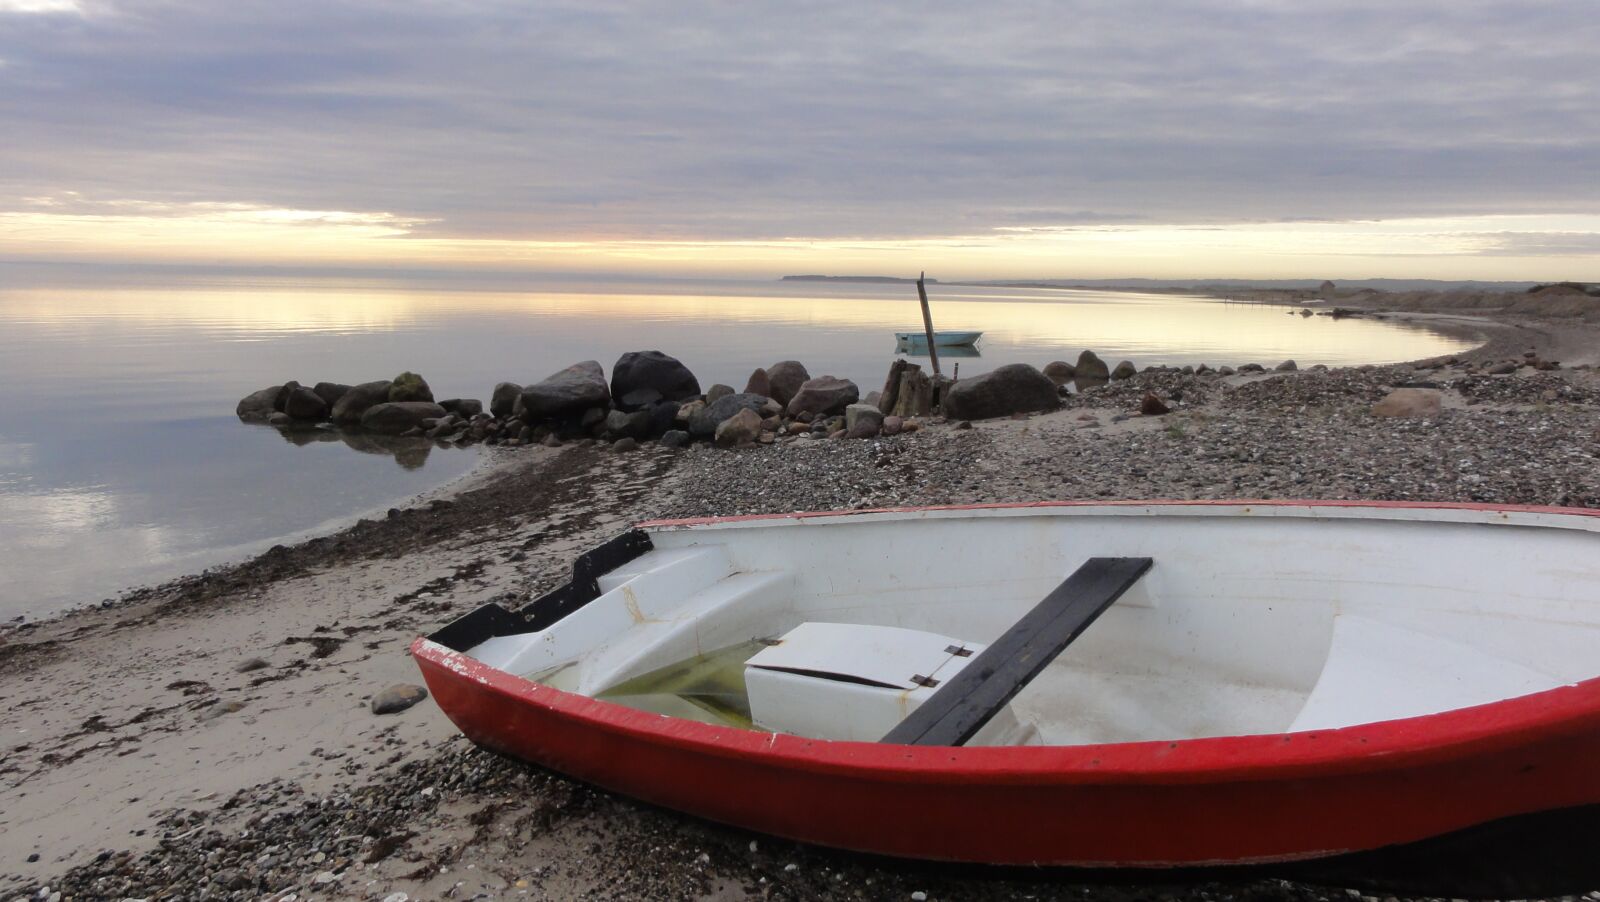 Sony DSC-HX5V sample photo. Denmark, boat, abendstimmung photography